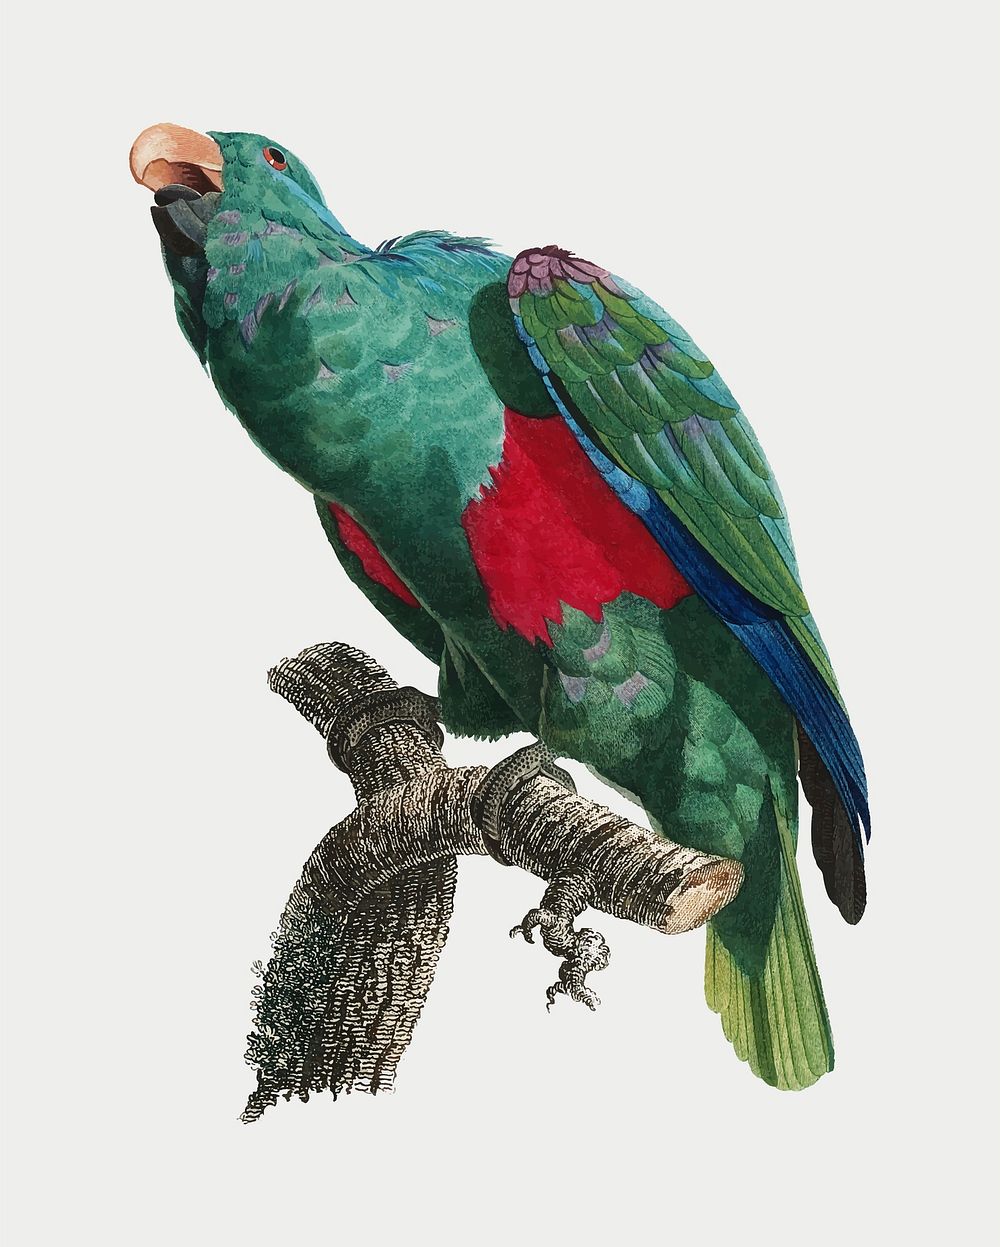 The Eclectus parrot vintage illustration